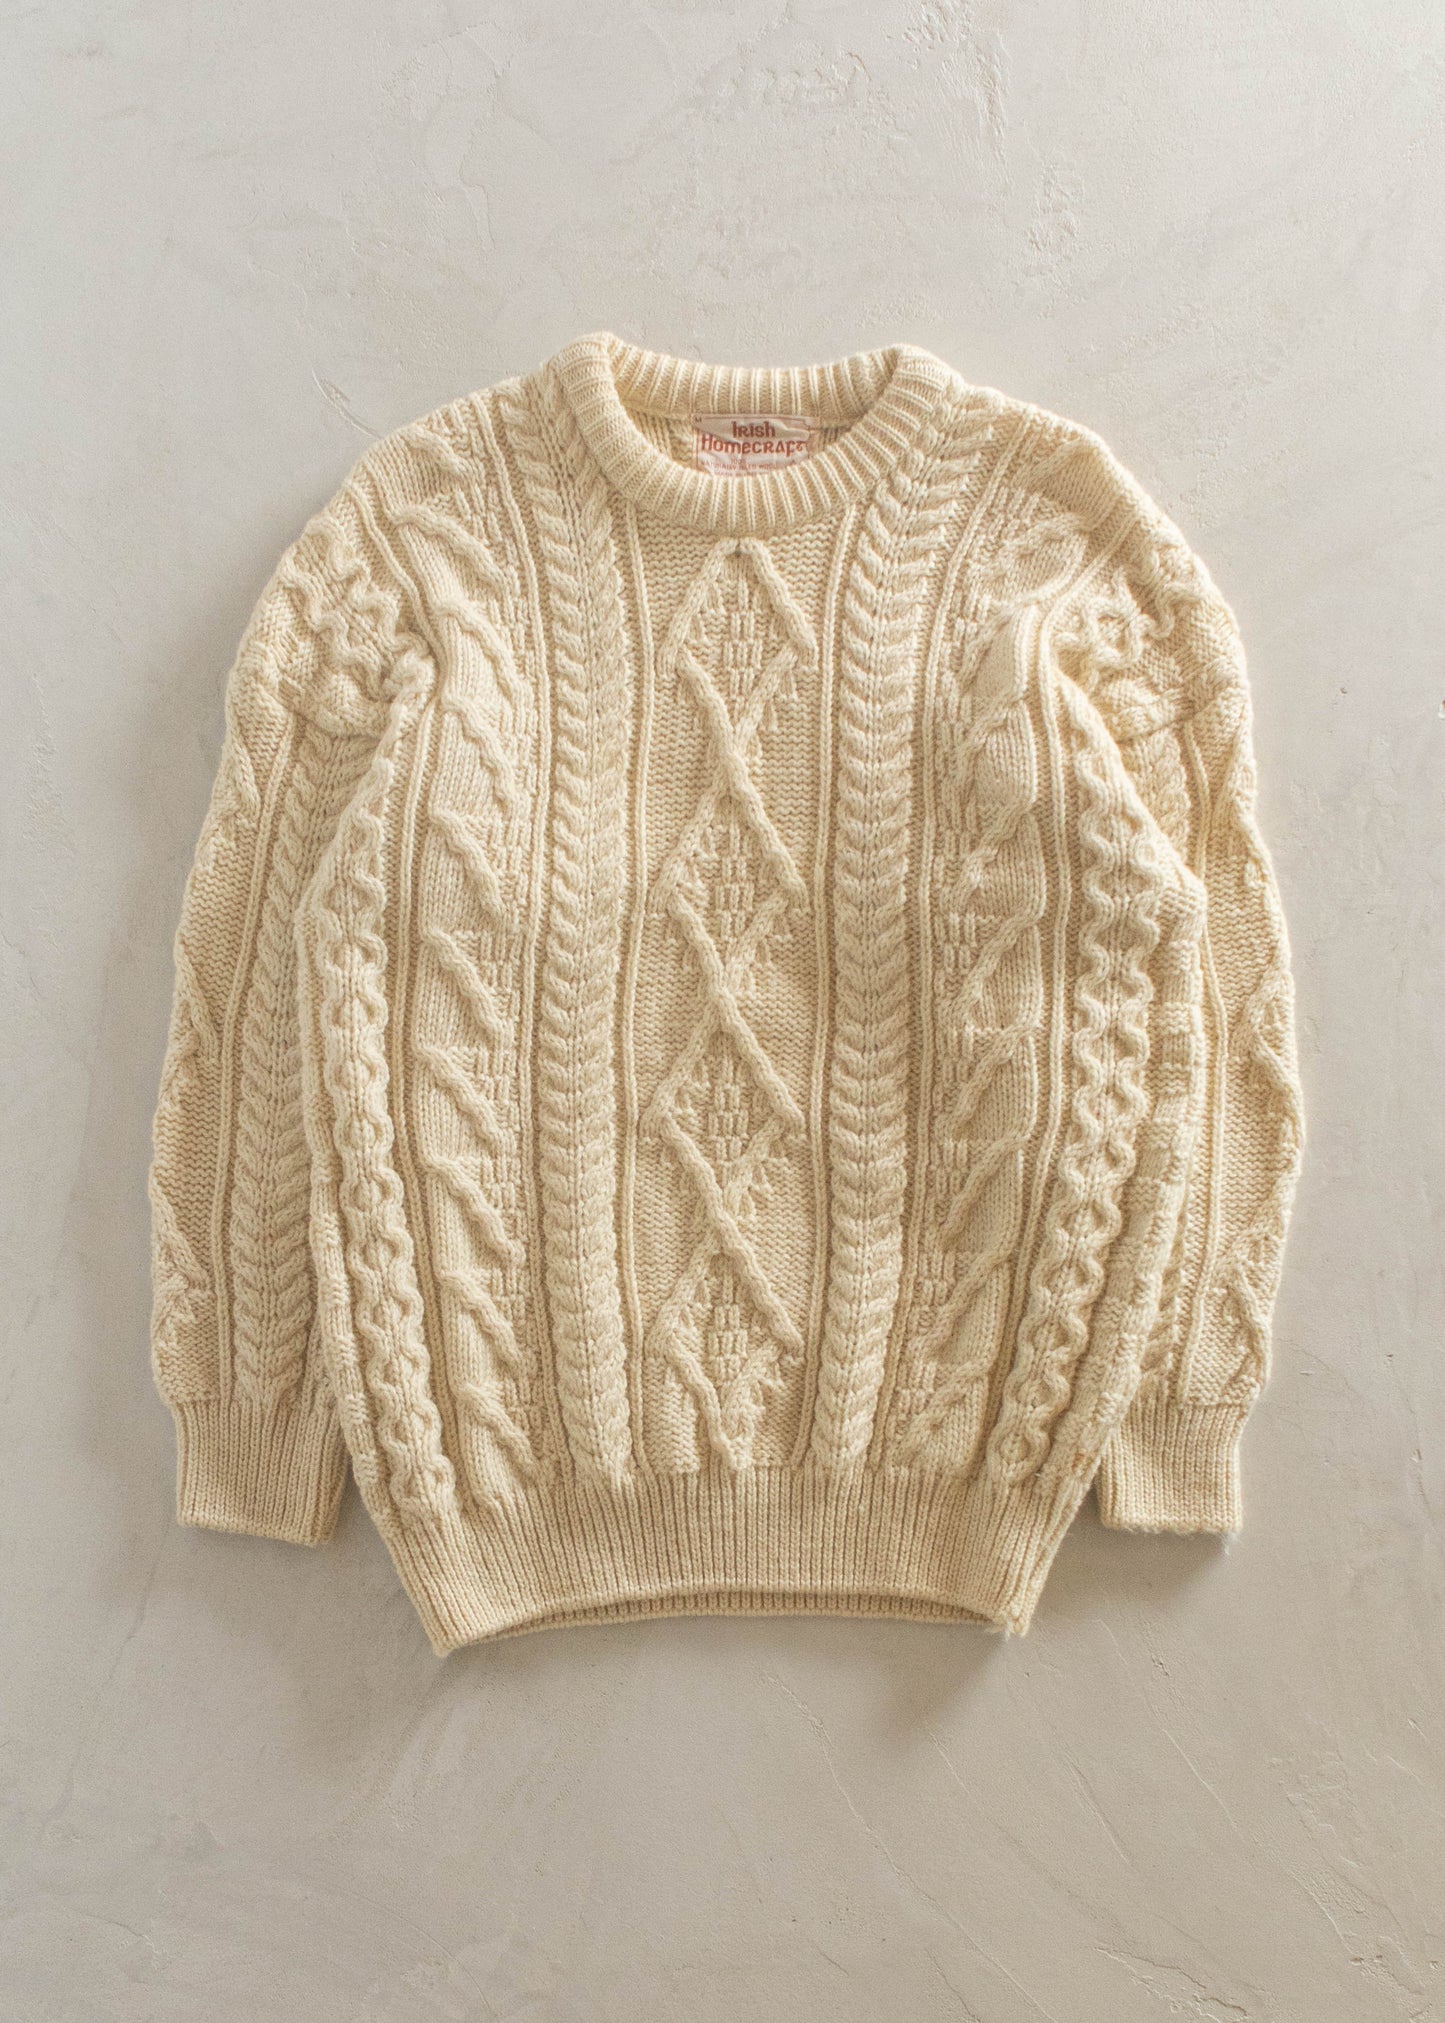 1980s Irish Homecraft Cable Knit Wool Fisherman Sweater Size M/L